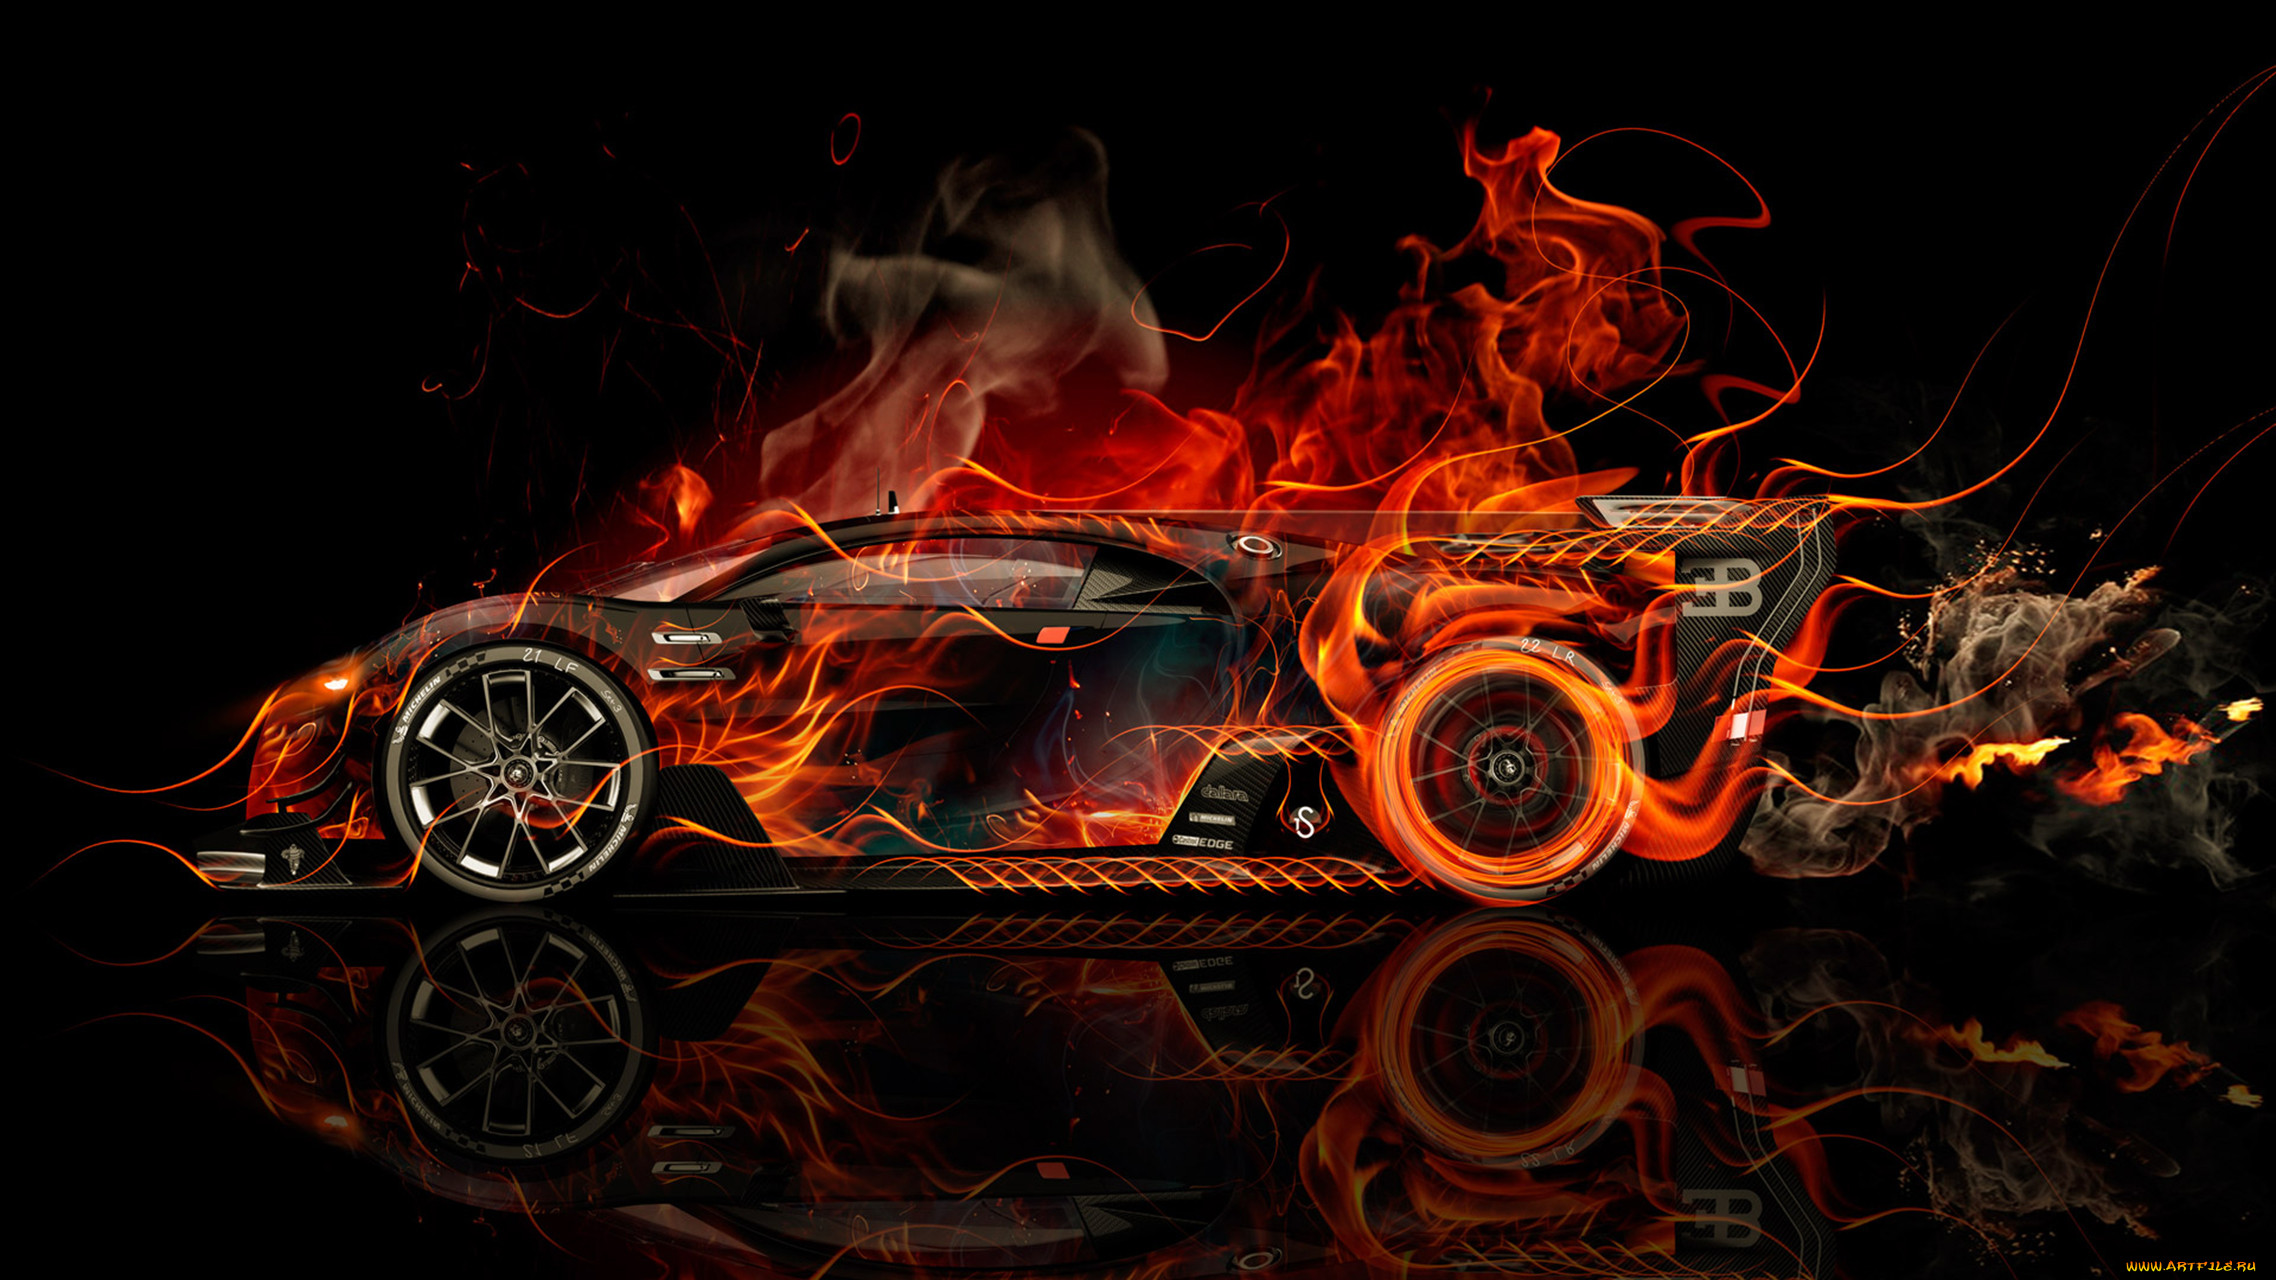 bugatti vision gran turismo side super fire flame abstract car 2016, , 3, bugatti, vision, gran, turismo, side, super, fire, flame, abstract, car, 2016